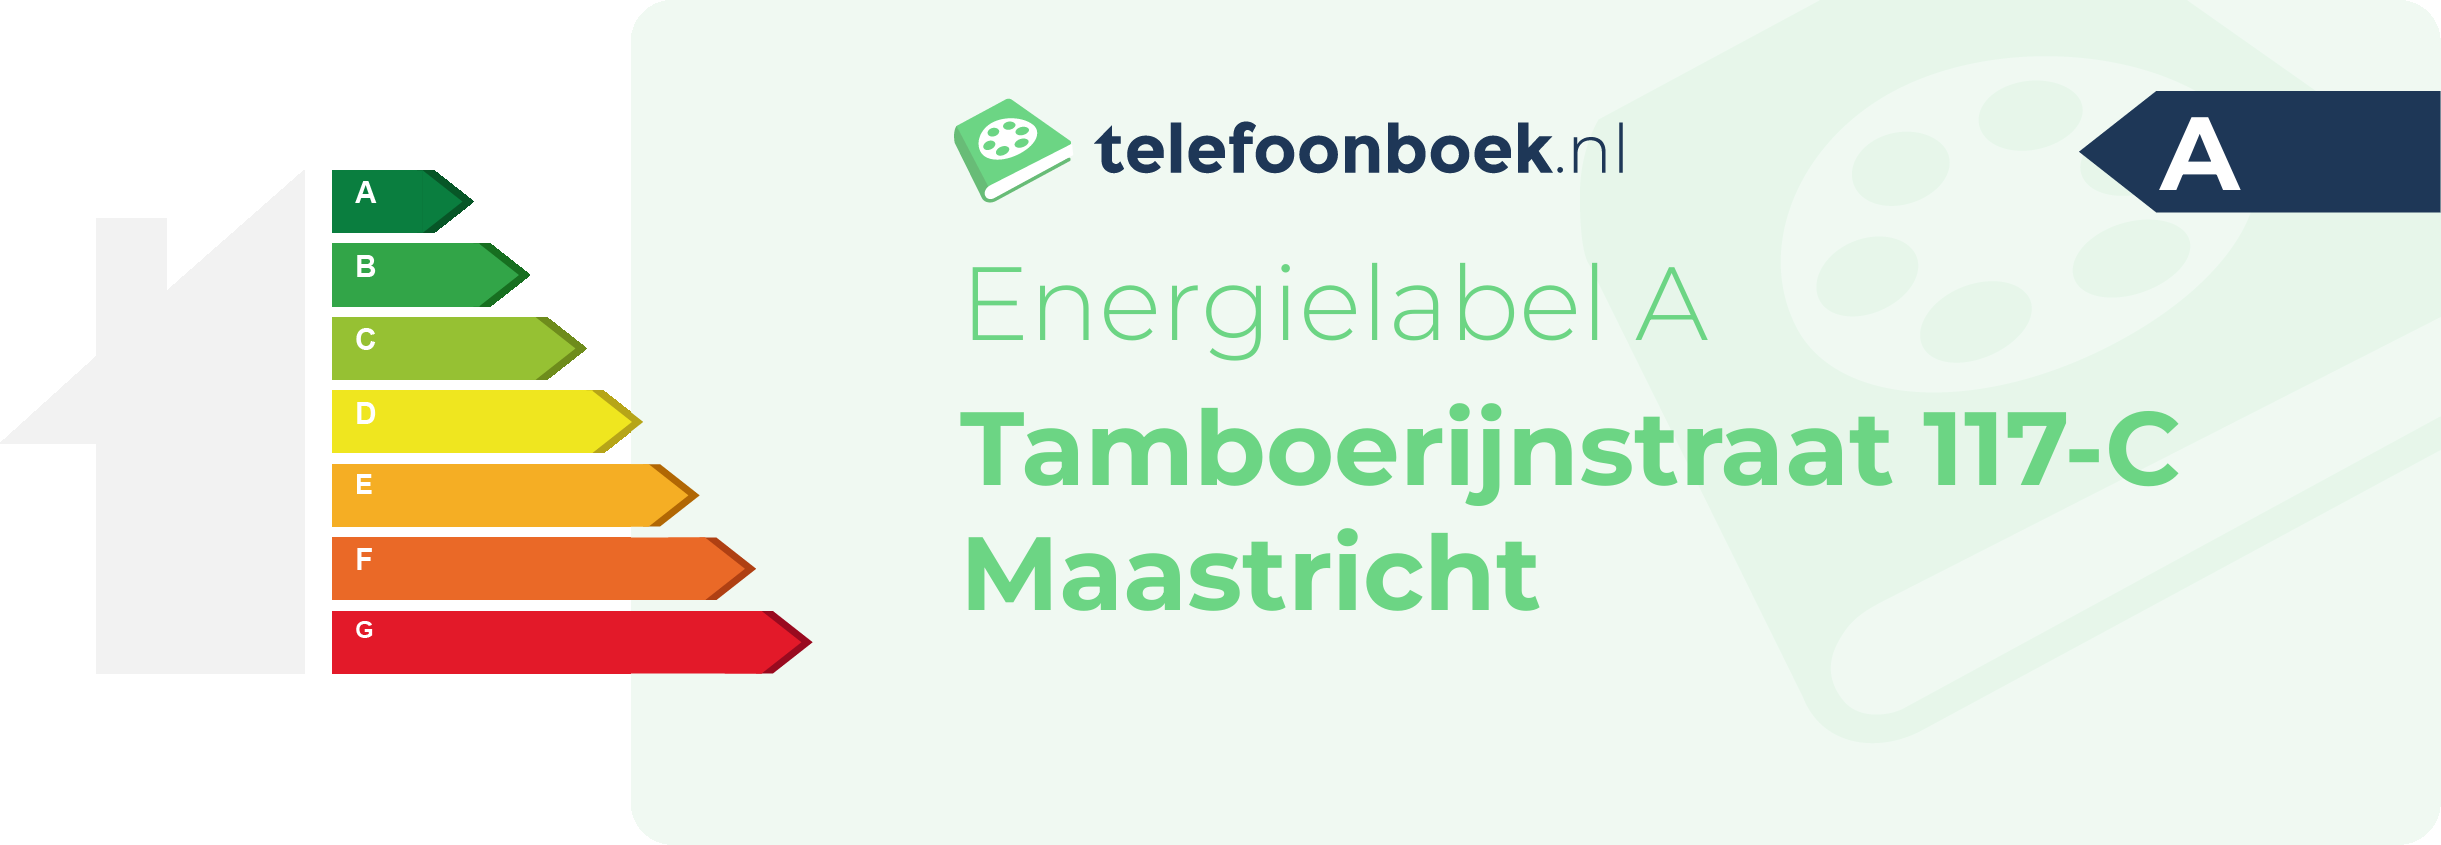 Energielabel Tamboerijnstraat 117-C Maastricht